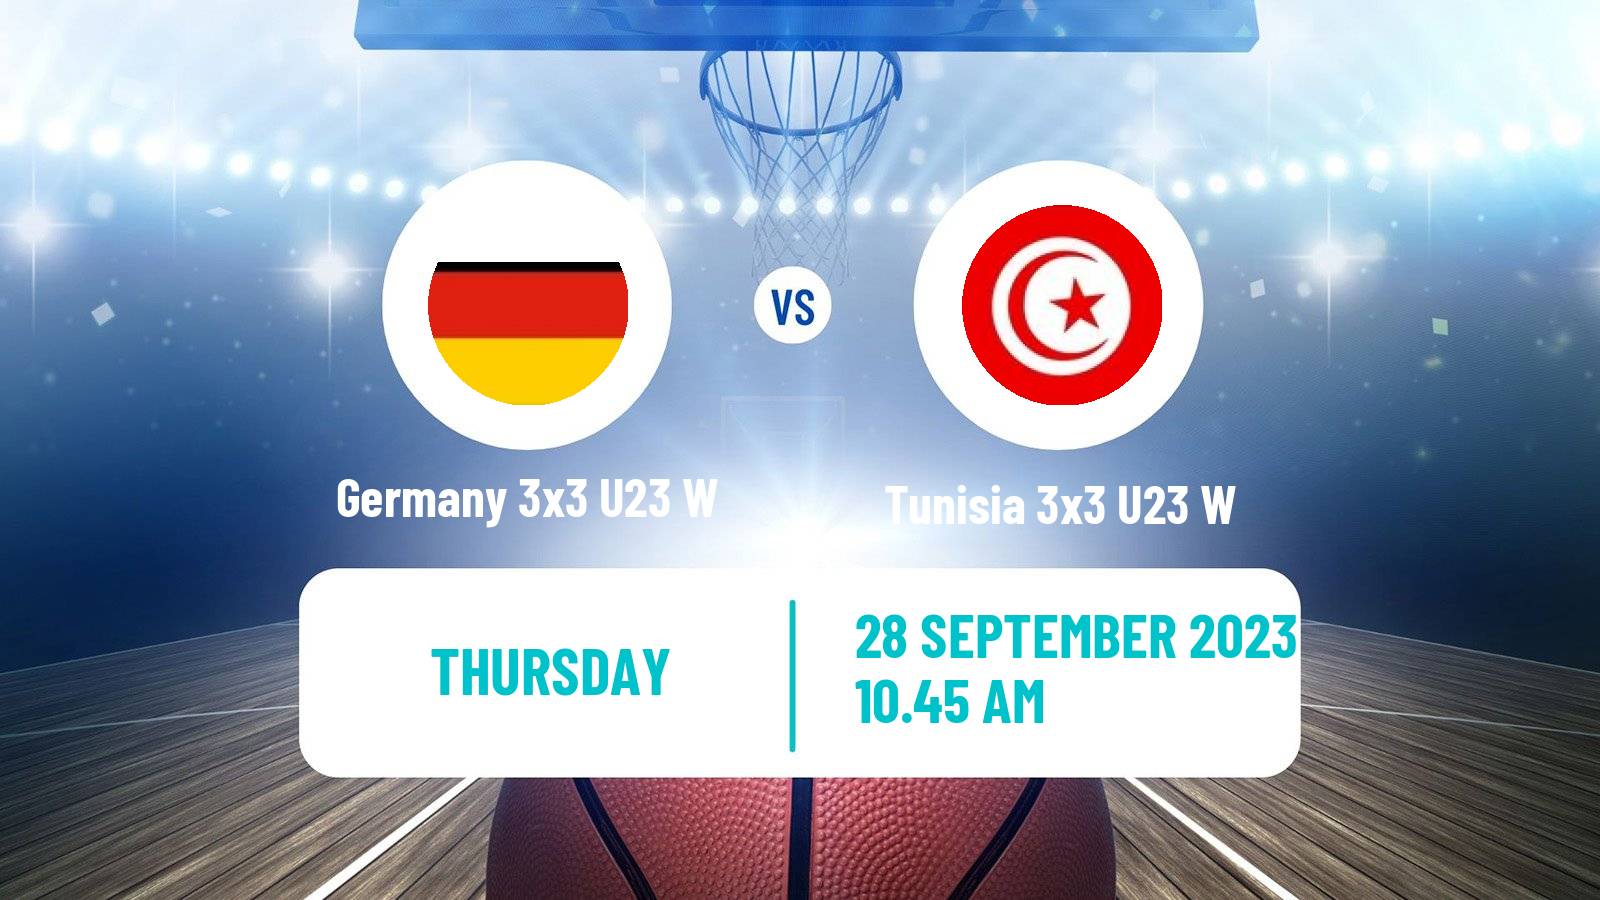 Basketball World Cup Basketball 3x3 U23 Women Germany 3x3 U23 W - Tunisia 3x3 U23 W